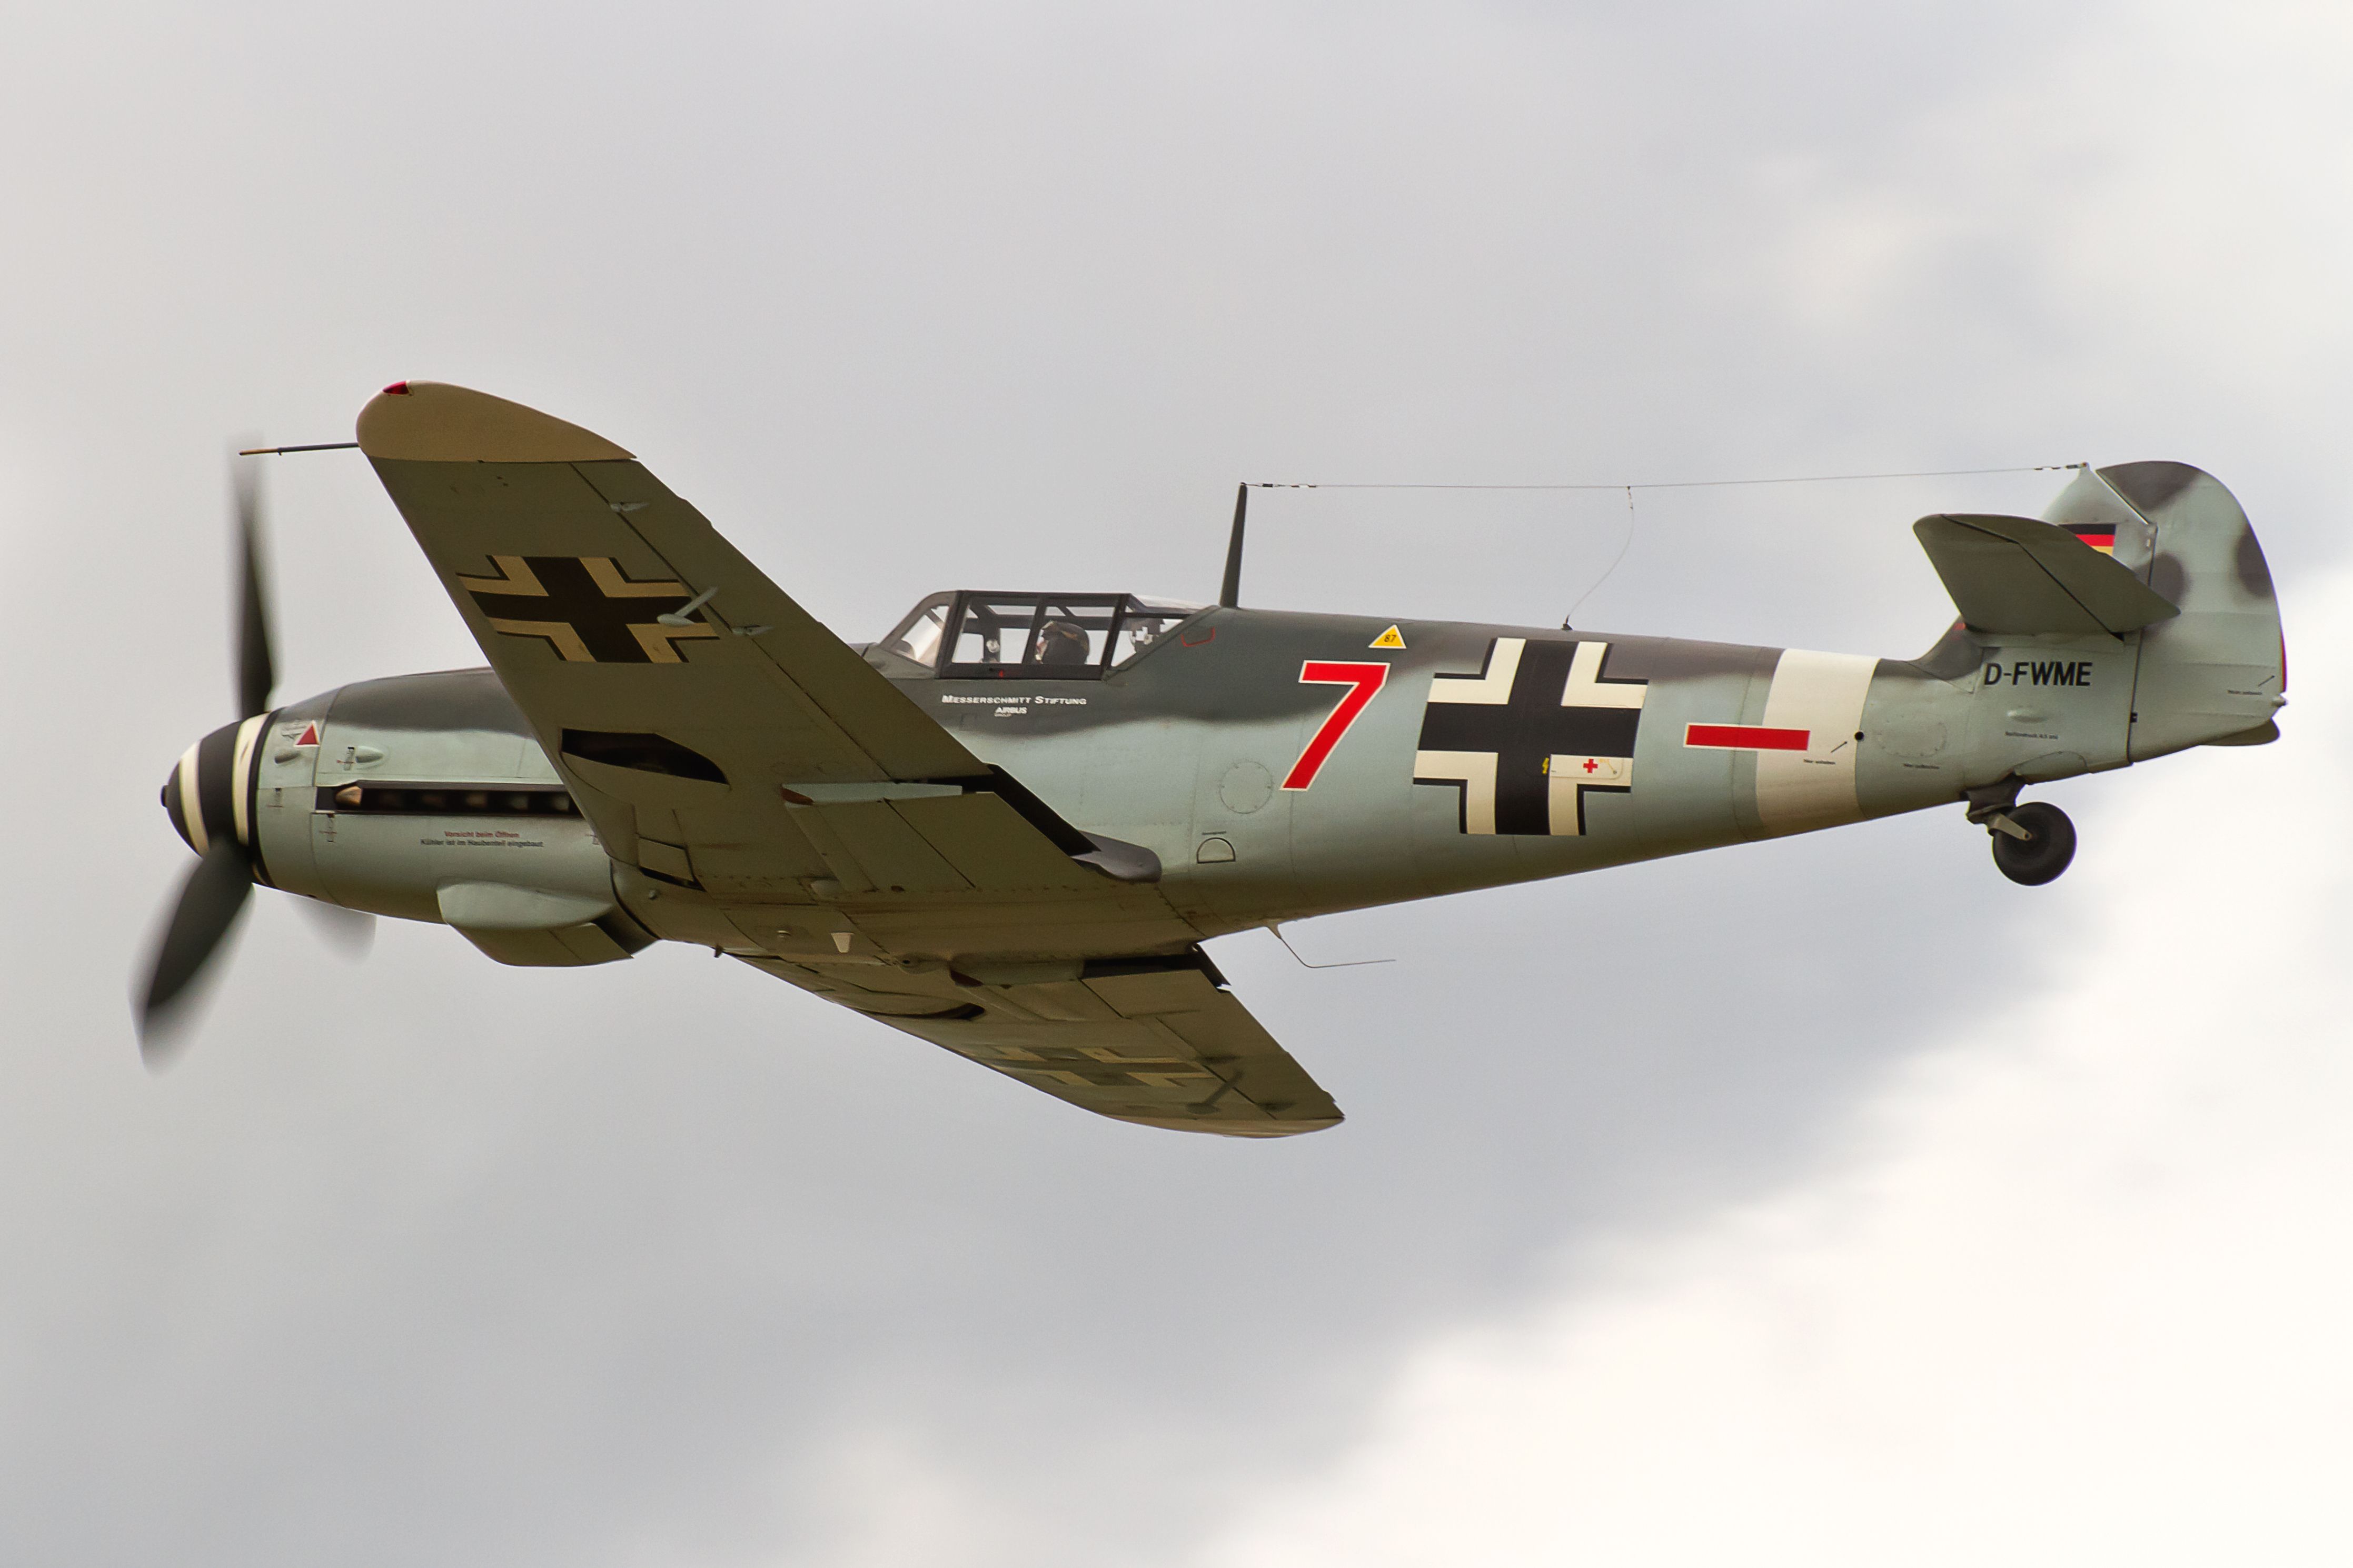 A Messerschmitt Bf 109 flying in the sky.